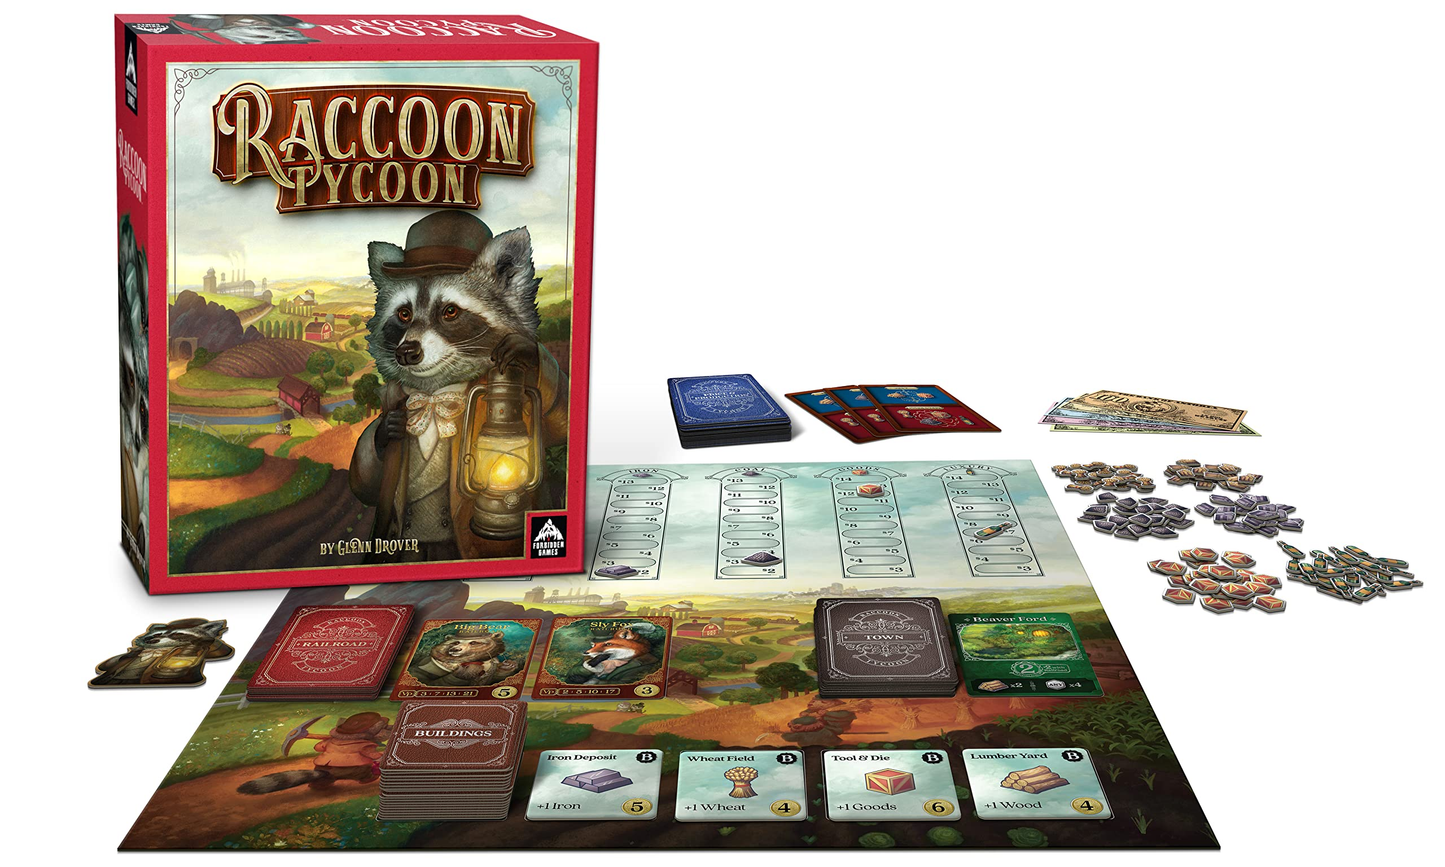 Raccoon Tycoon Standard Edition